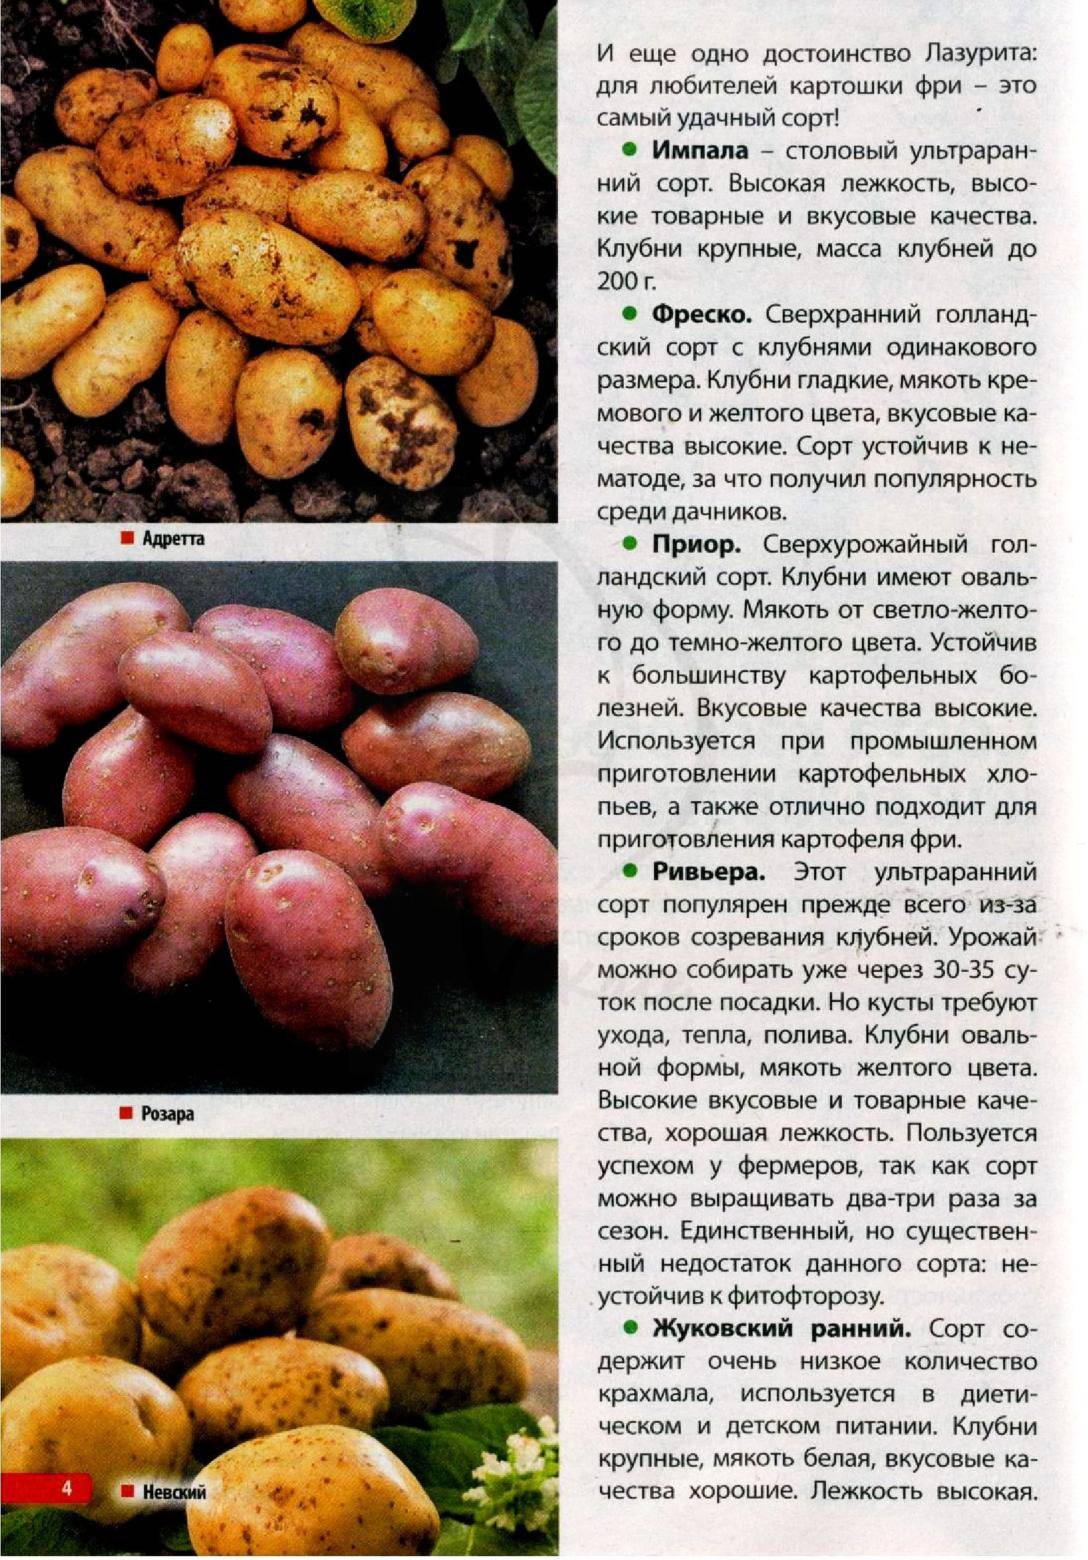 Картофель адретта: как выглядит на фото, а также общее описание сорта, характеристика его качеств, советы по обработке семян и рекомендации по выращиванию картошки